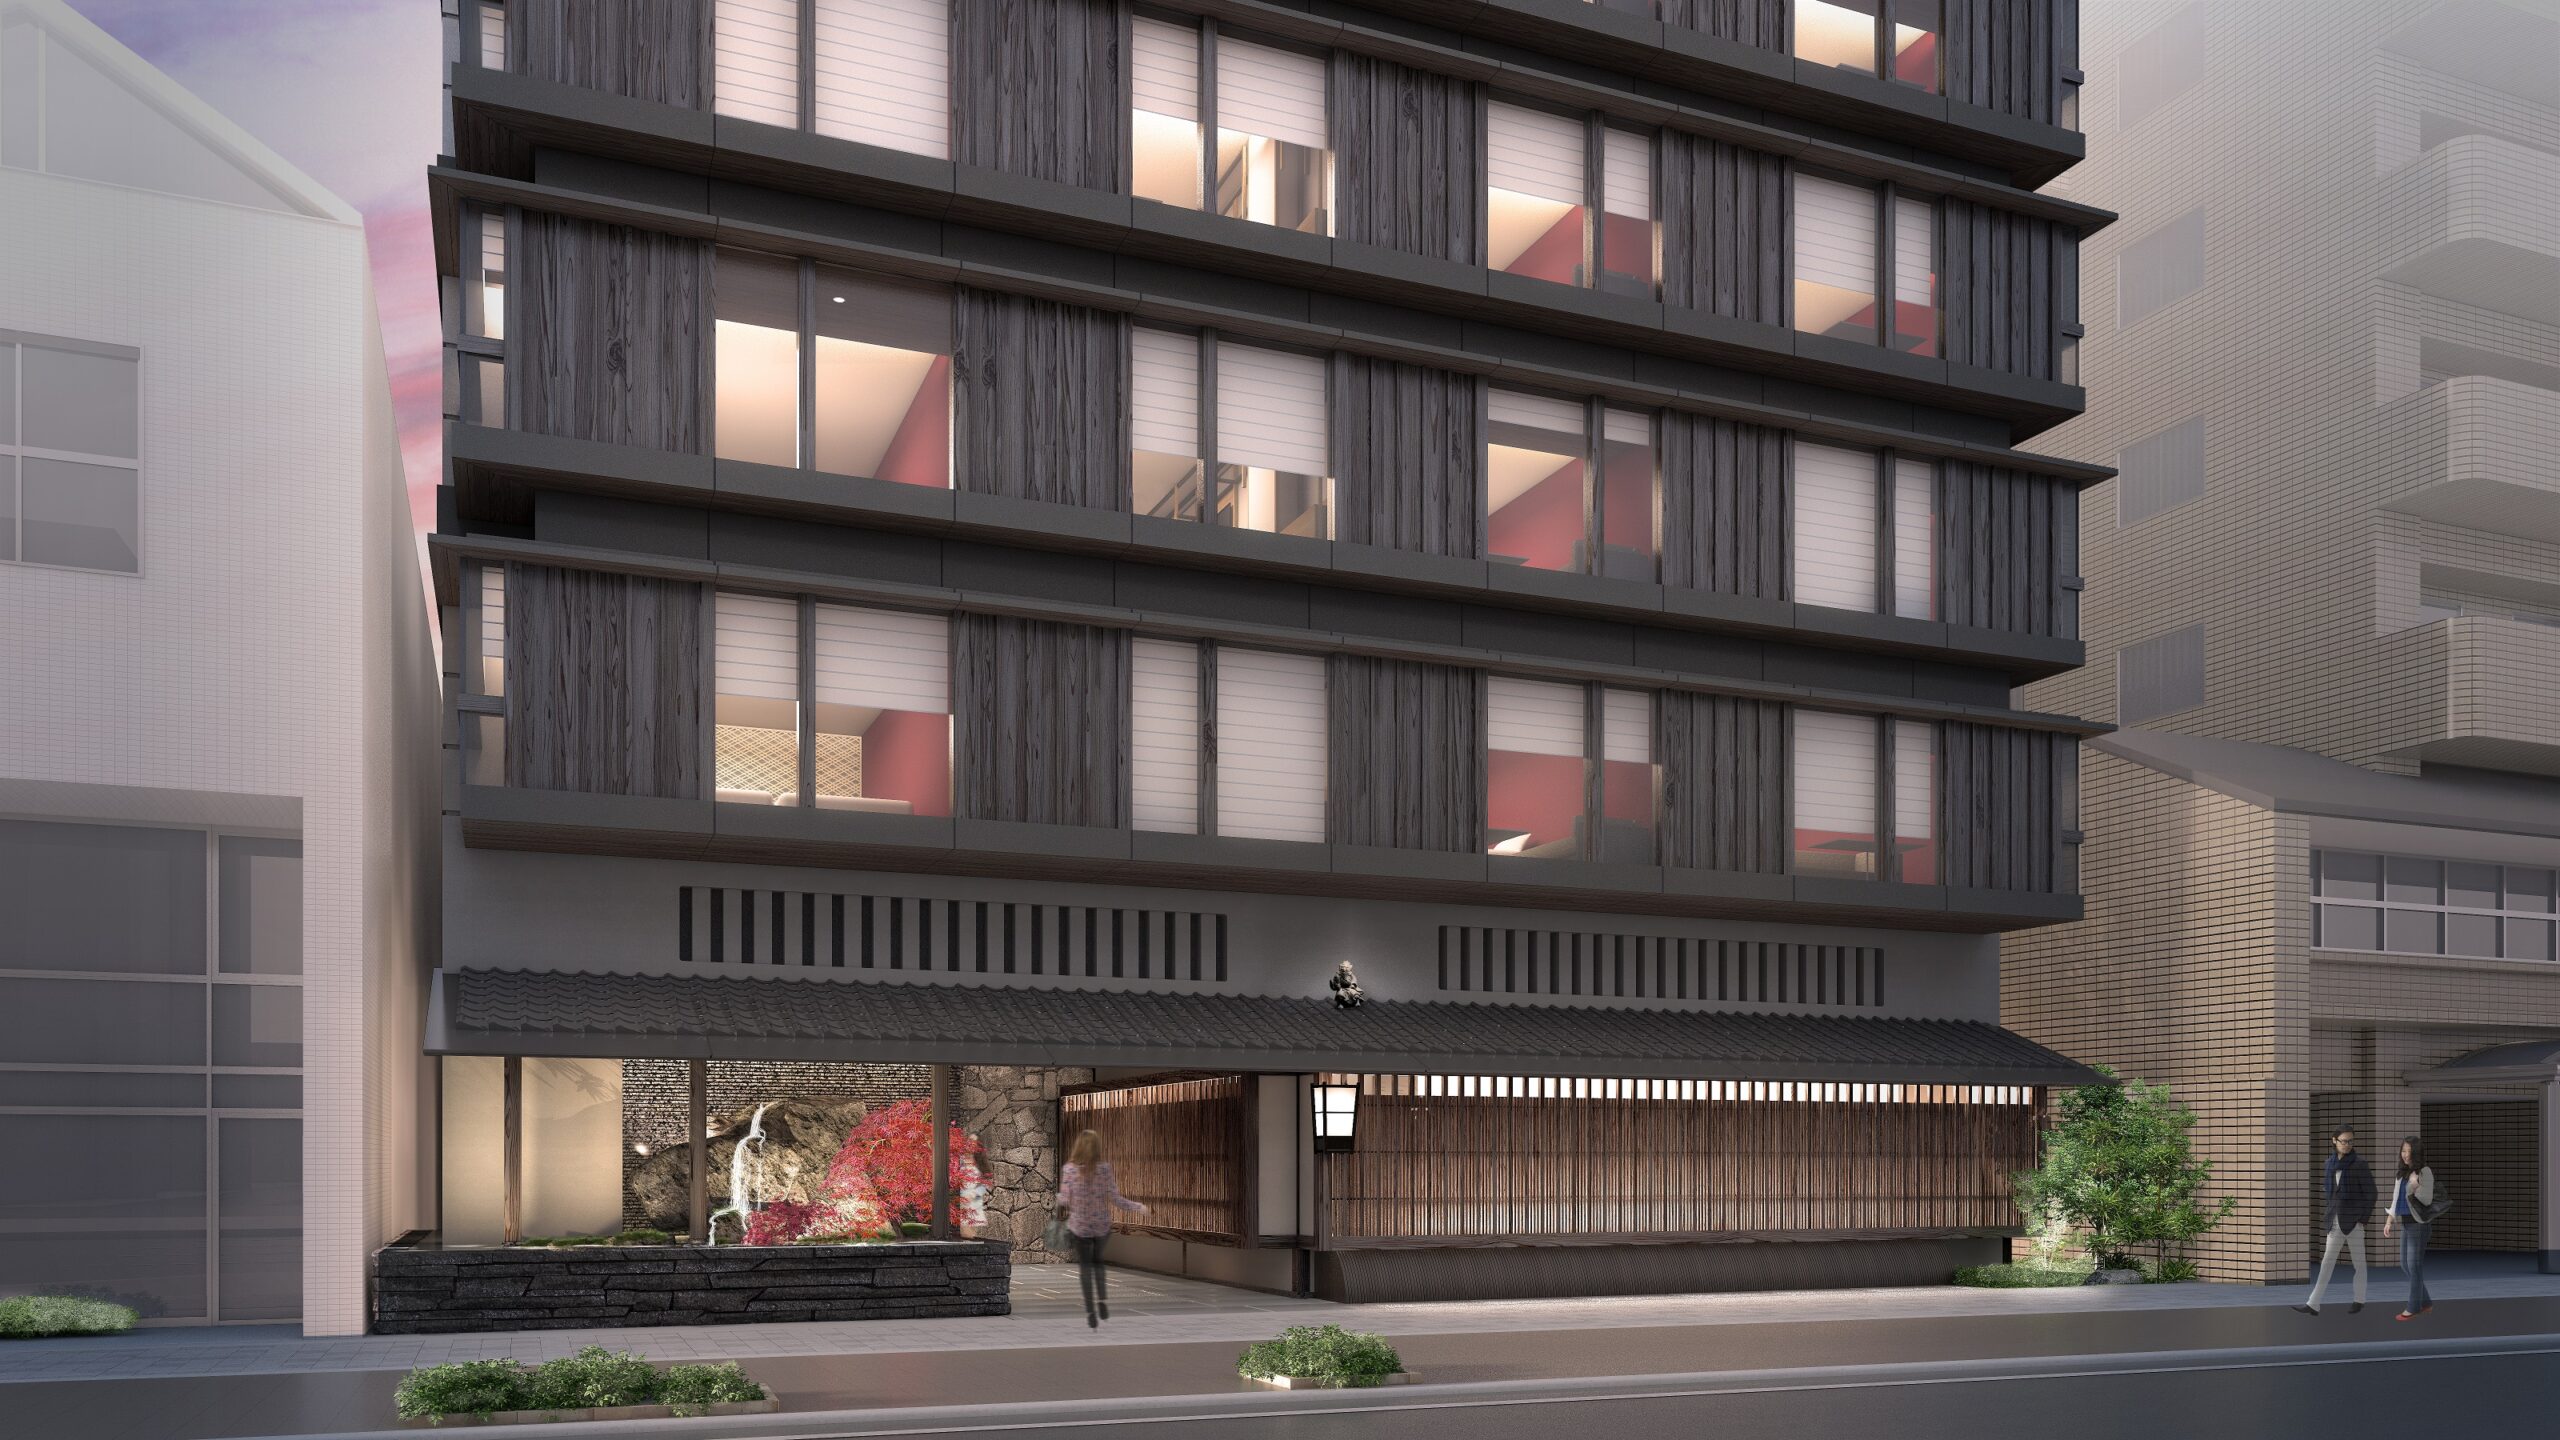 2022年8月26日、京都の伝統美とつながるホテル「THE BLOSSOM KYOTO」が開業